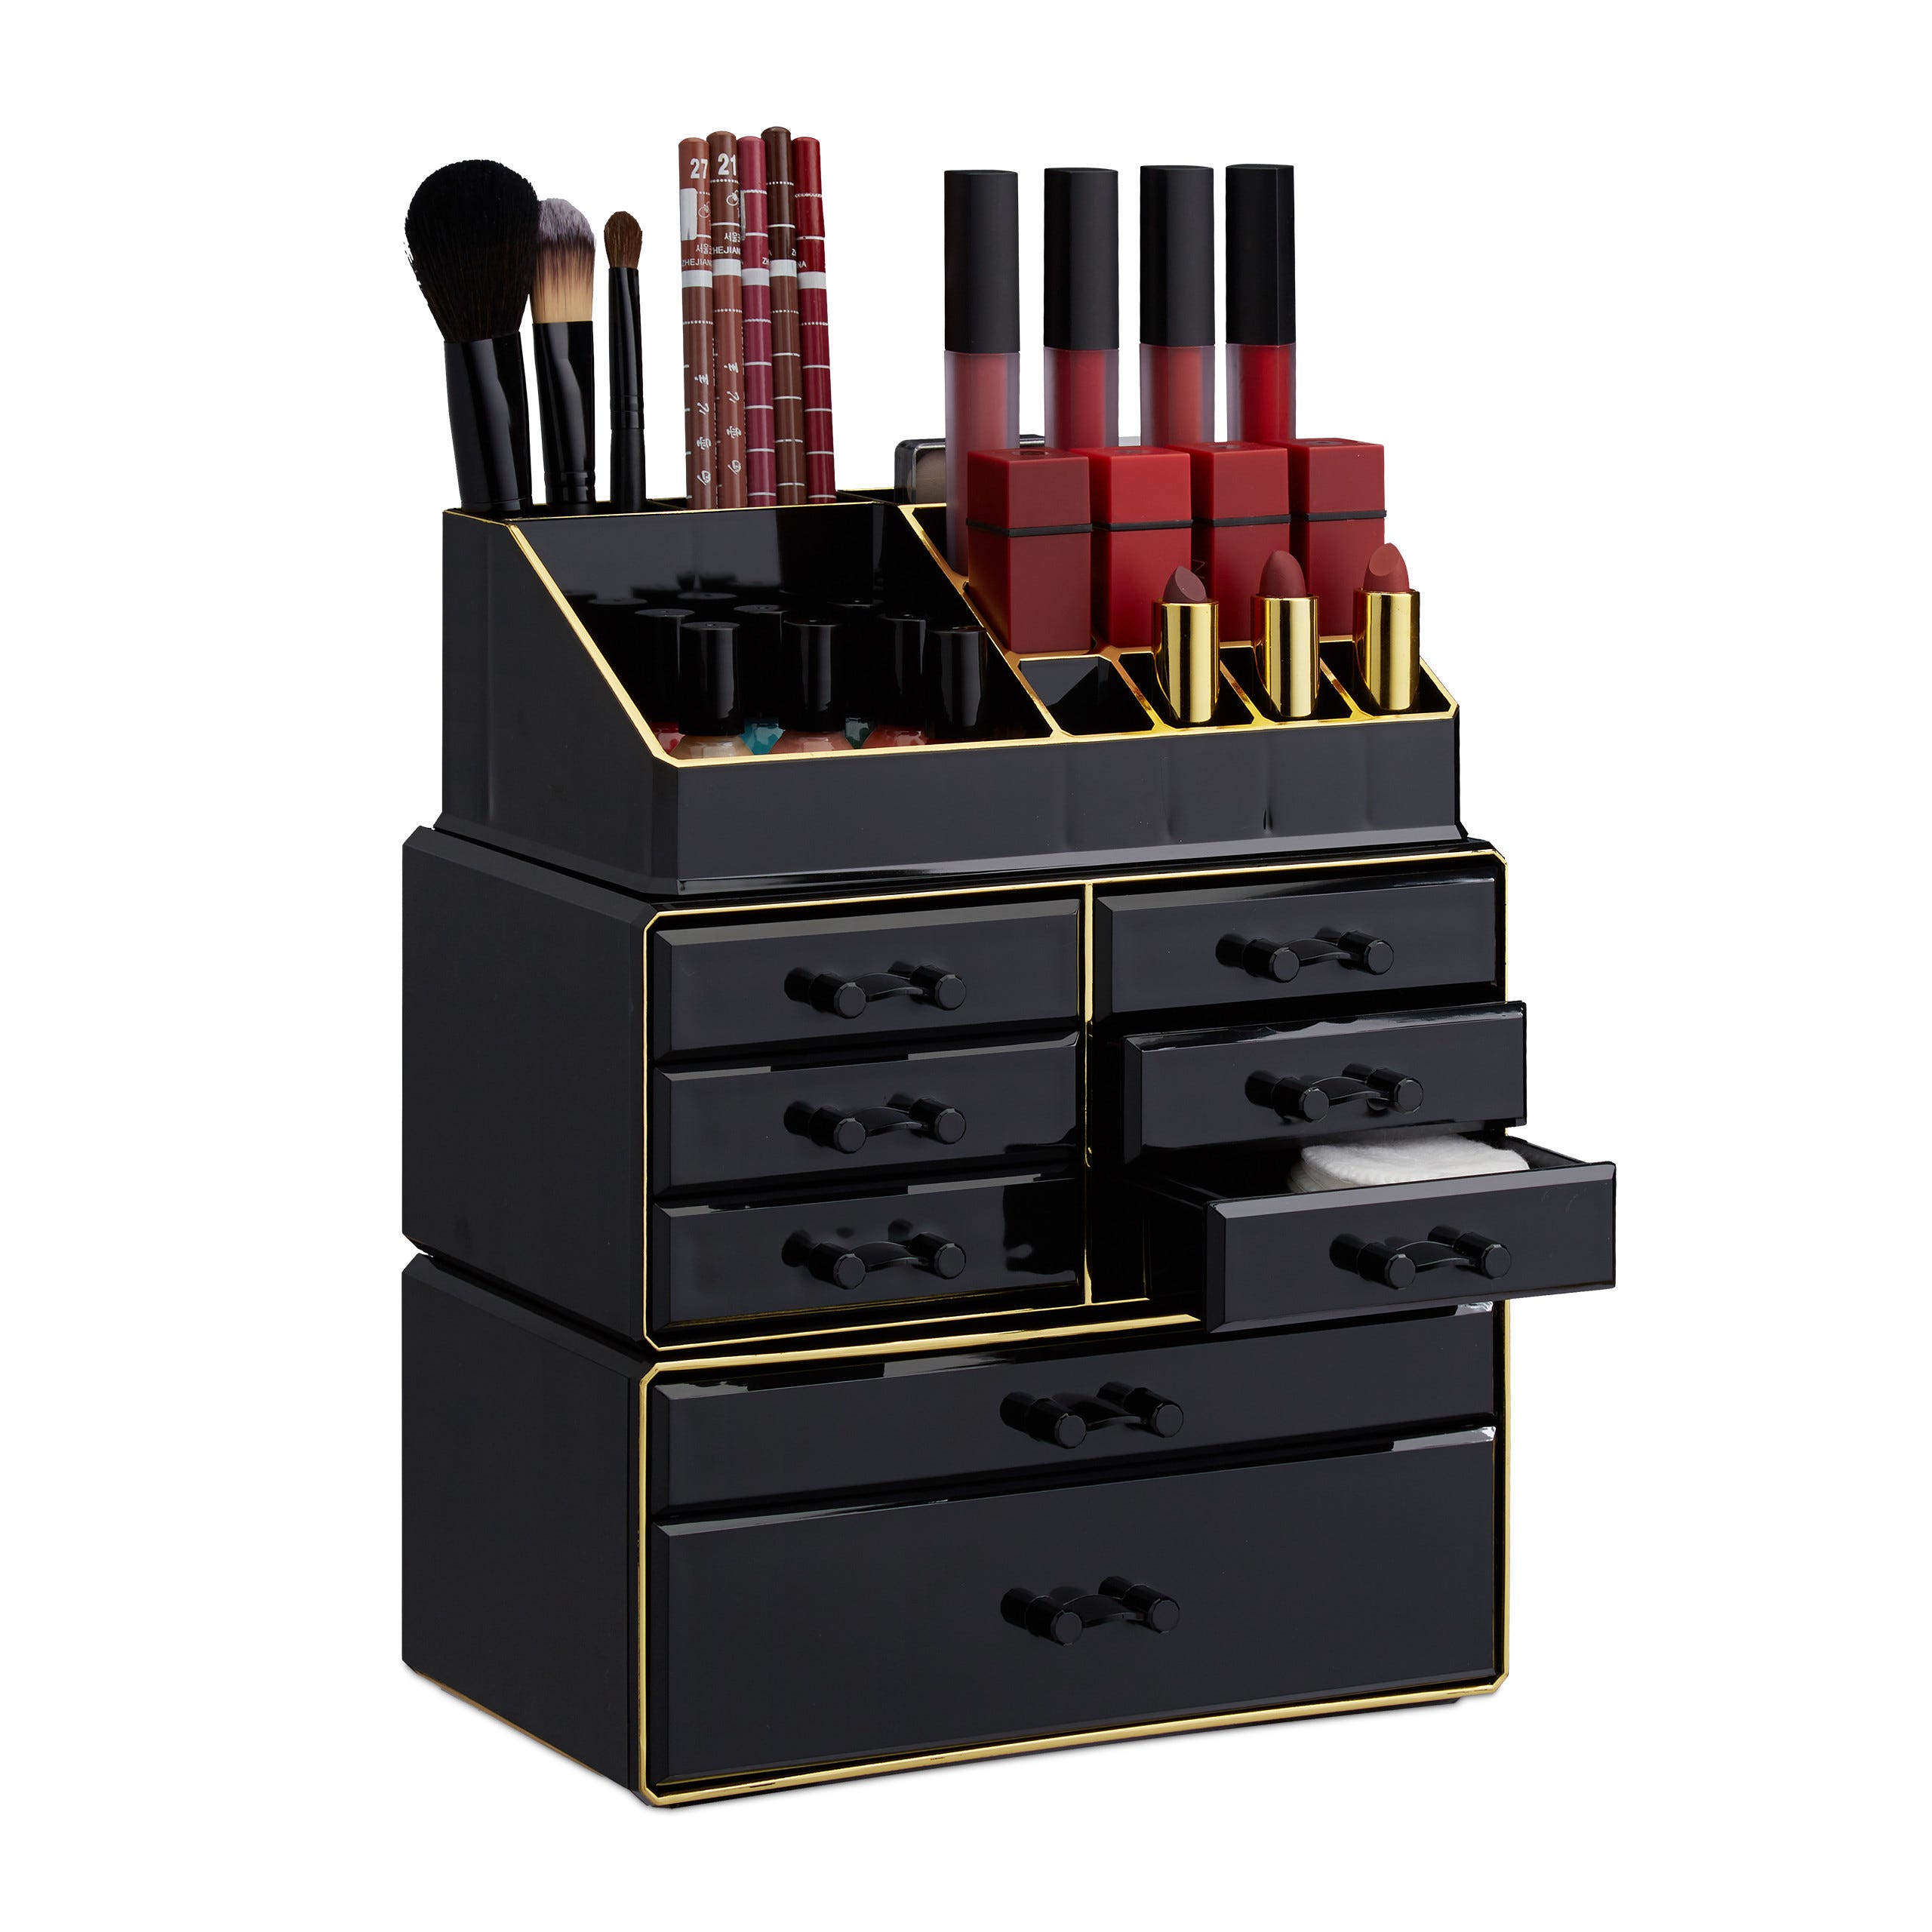 1x Boîte rangement maquillage, Make up organisateur, produits cosmétiques,  8 tiroirs compartiments, acrylique, noir/doré